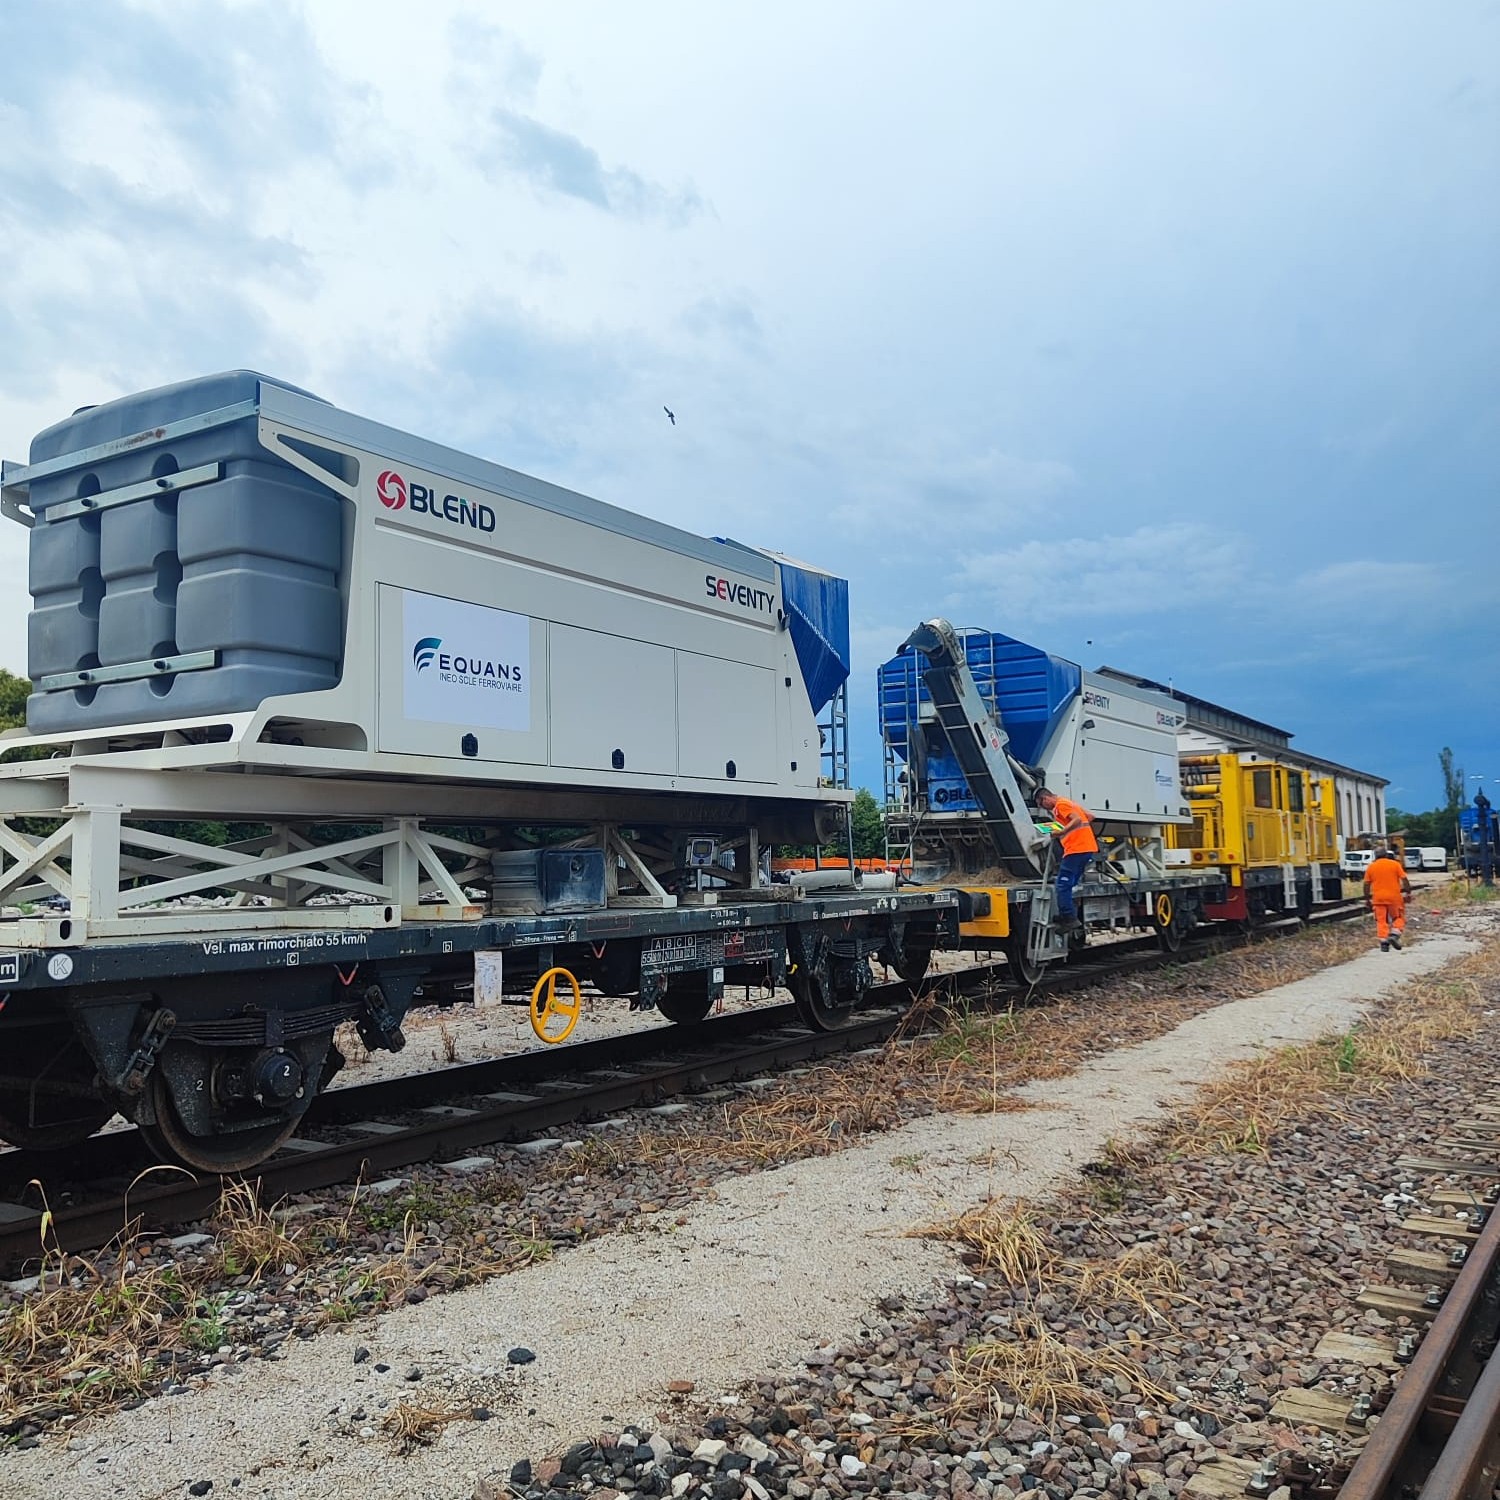 INEO SCLE impiega gli impianti bresciani sui propri carri ferroviari